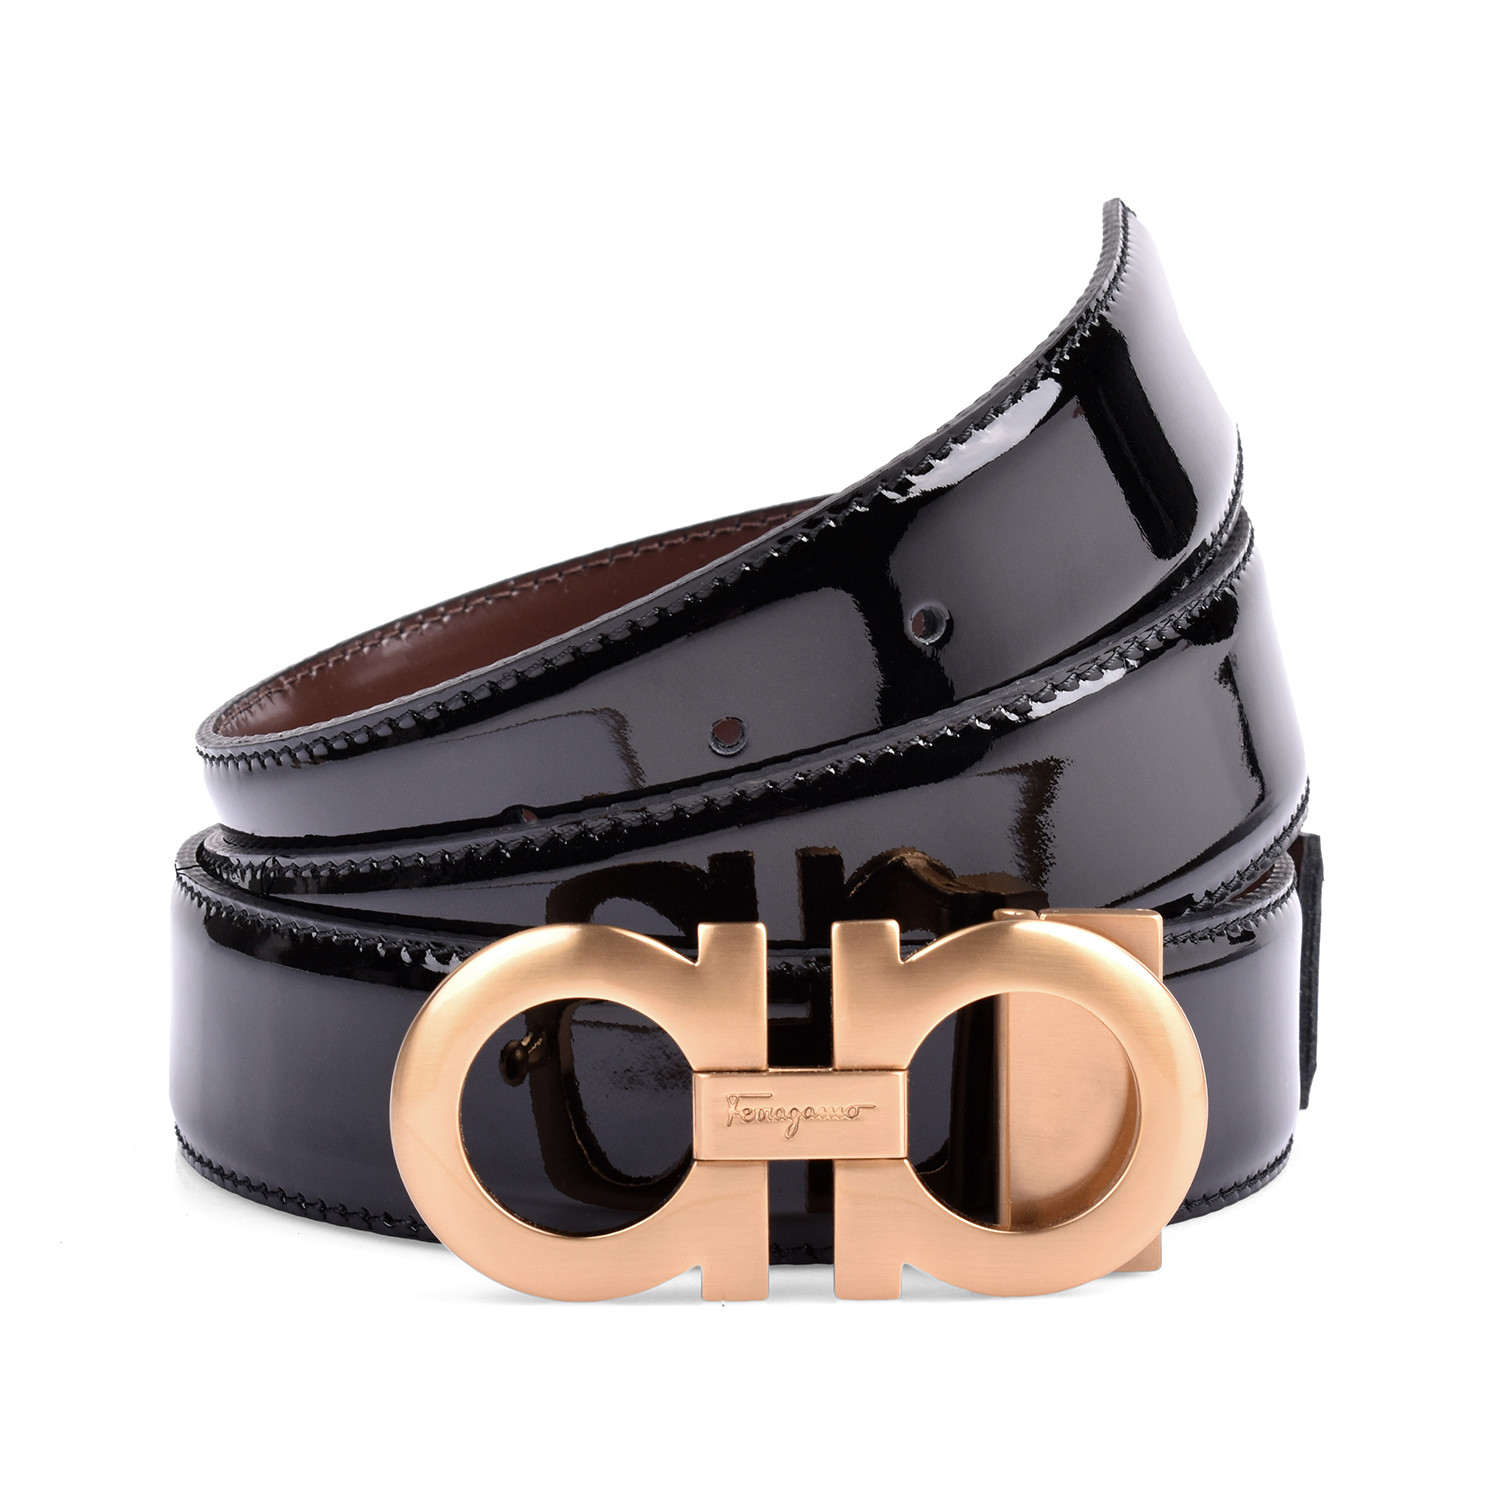 Monogram Patent Leather Belt // Black - Salvatore Ferragamo - Touch of